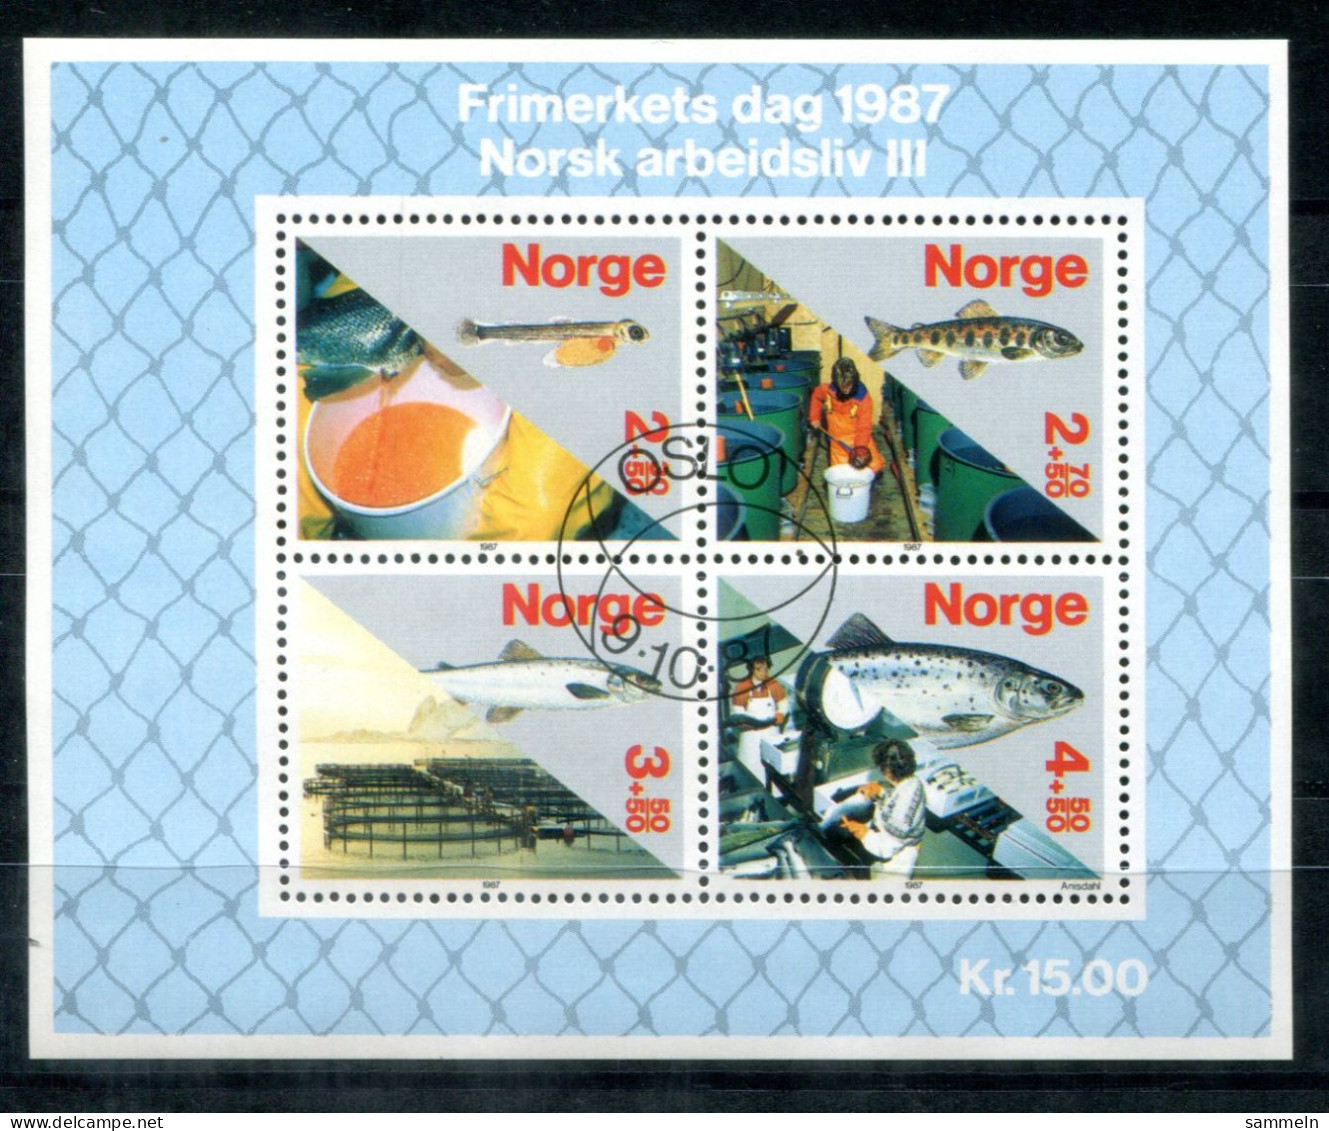 NORWEGEN Block 8, Bl.8 Spec.FD Canc. - Sisch, Fish, Poisson - NORWAY / NORVÈGE - Hojas Bloque